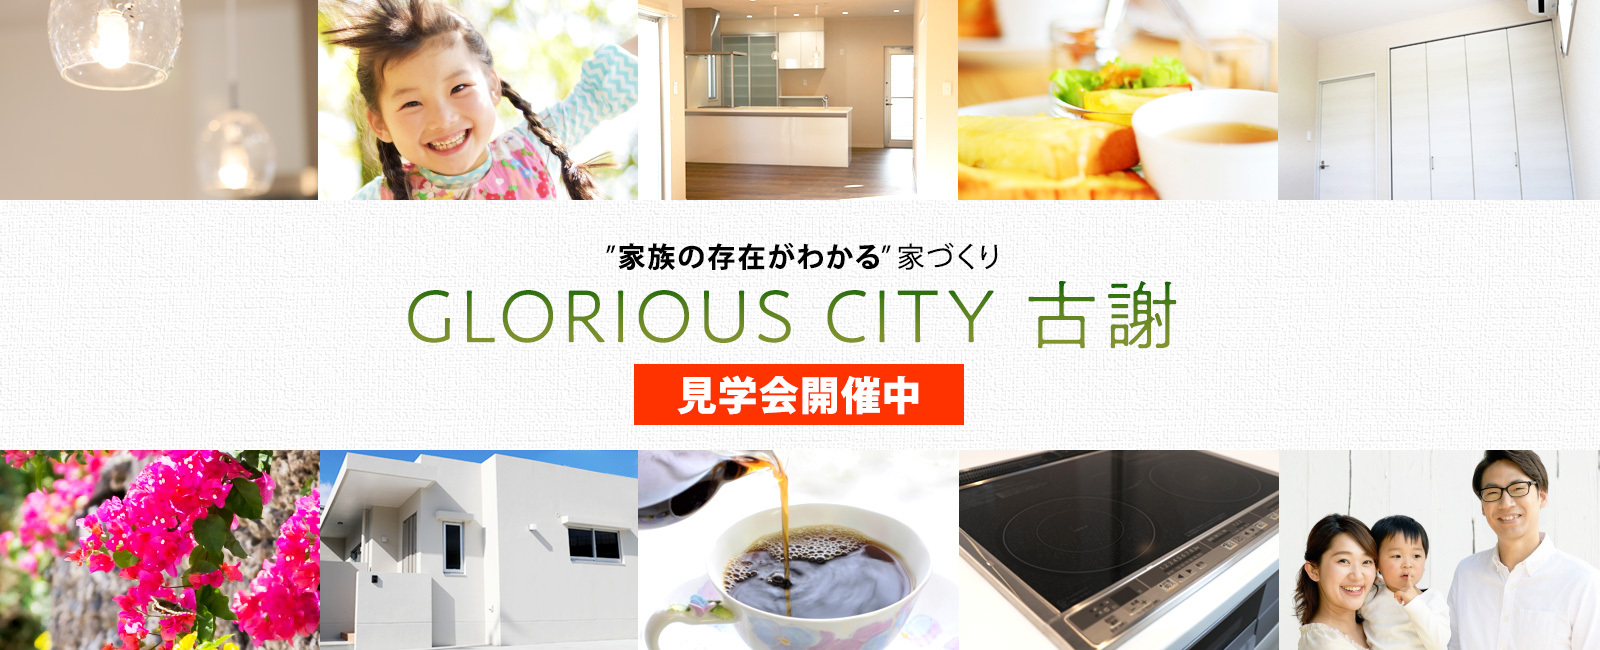 建売住宅『GLORIOUS CITY 古謝』